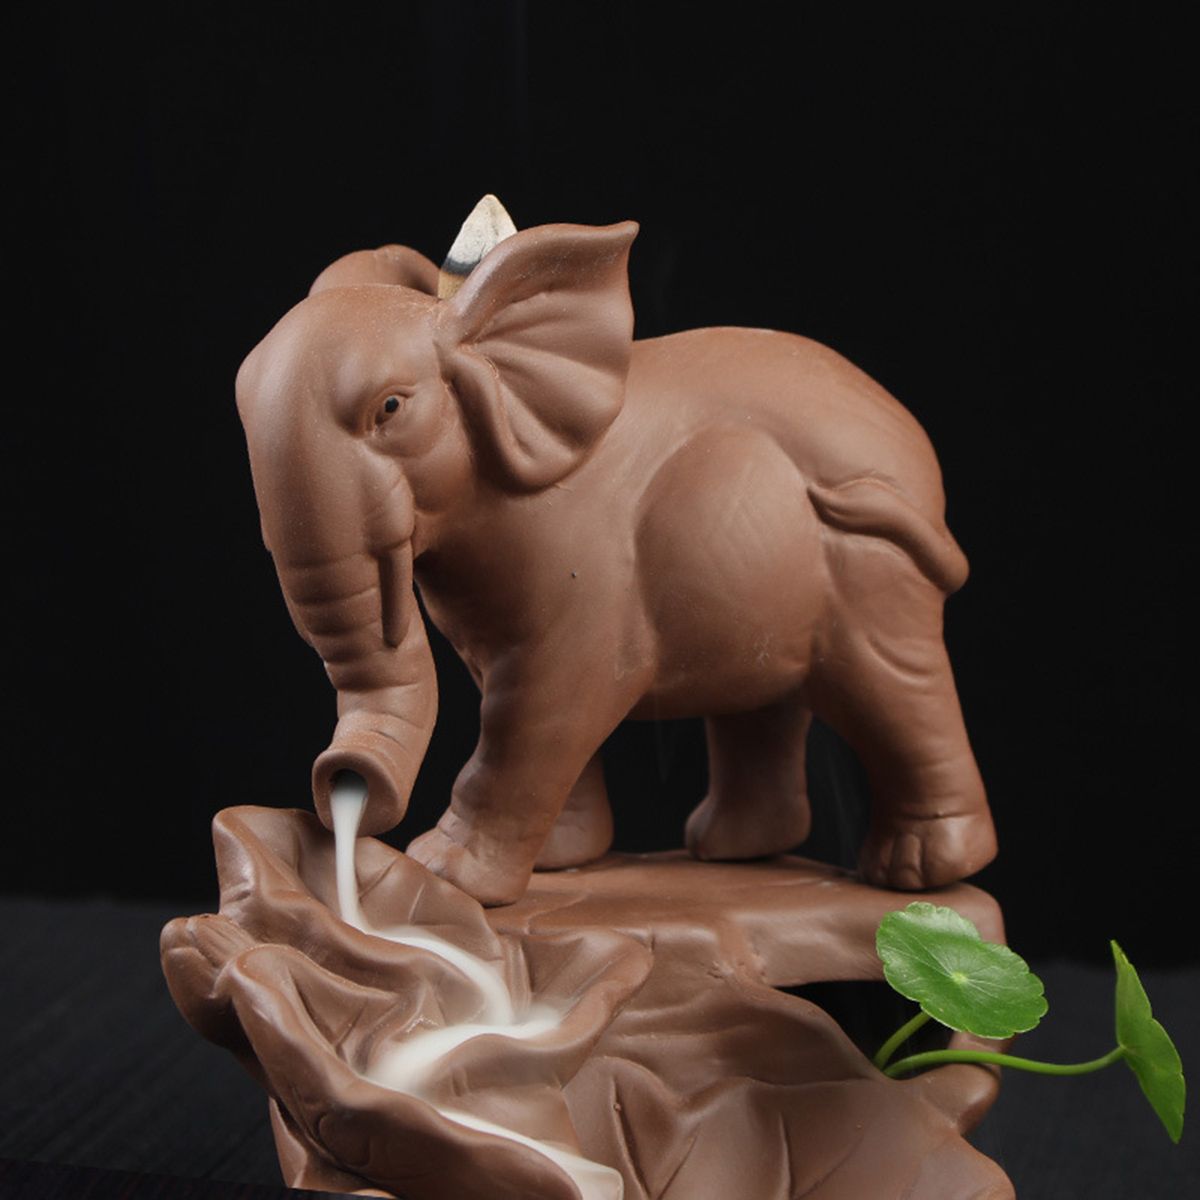 Elephant-Backflow-Incense-Burner-Holder-Censer-Ceramic-Home-Decorations-1479056